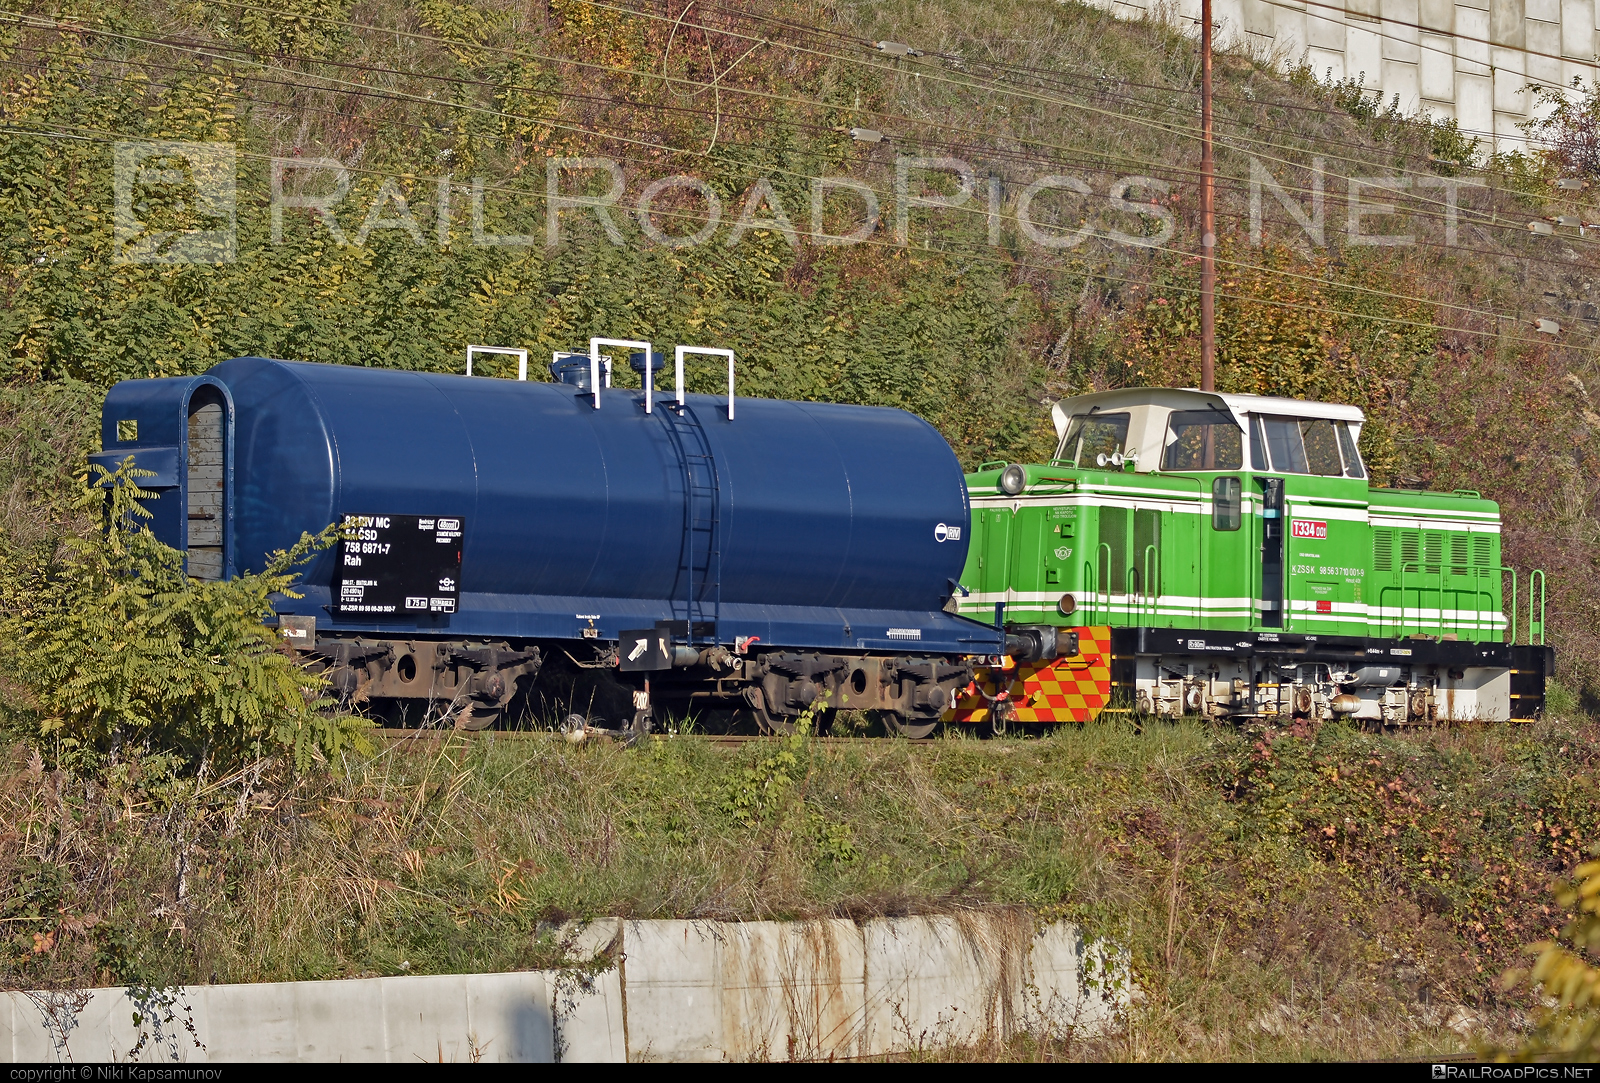 ČKD T 334.0 (710) - T334.001 operated by Železničná Spoločnost' Slovensko, a.s. #ZeleznicnaSpolocnostSlovensko #ckd #ckd3340 #ckd710 #ckdt3340 #csd #kesselwagen #rosnicka #tankwagon #zssk